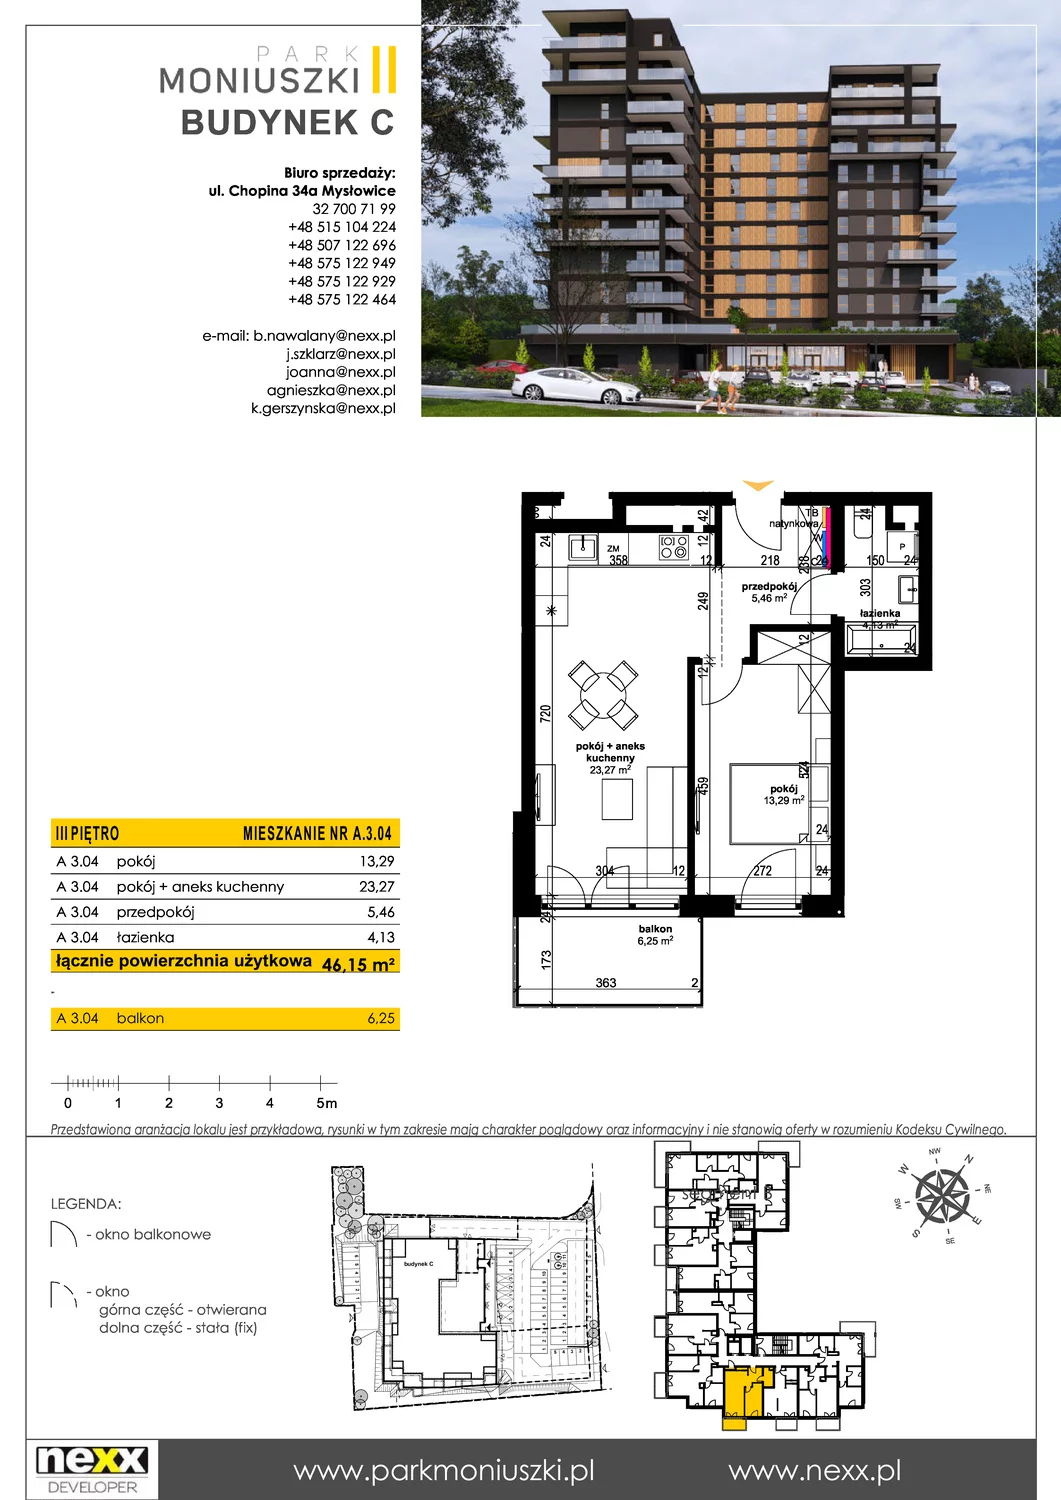 Mieszkanie 46,12 m², piętro 3, oferta nr A 3.04, Osiedle Park Moniuszki, Mysłowice, ul. Okrzei / Wielka Skotnica